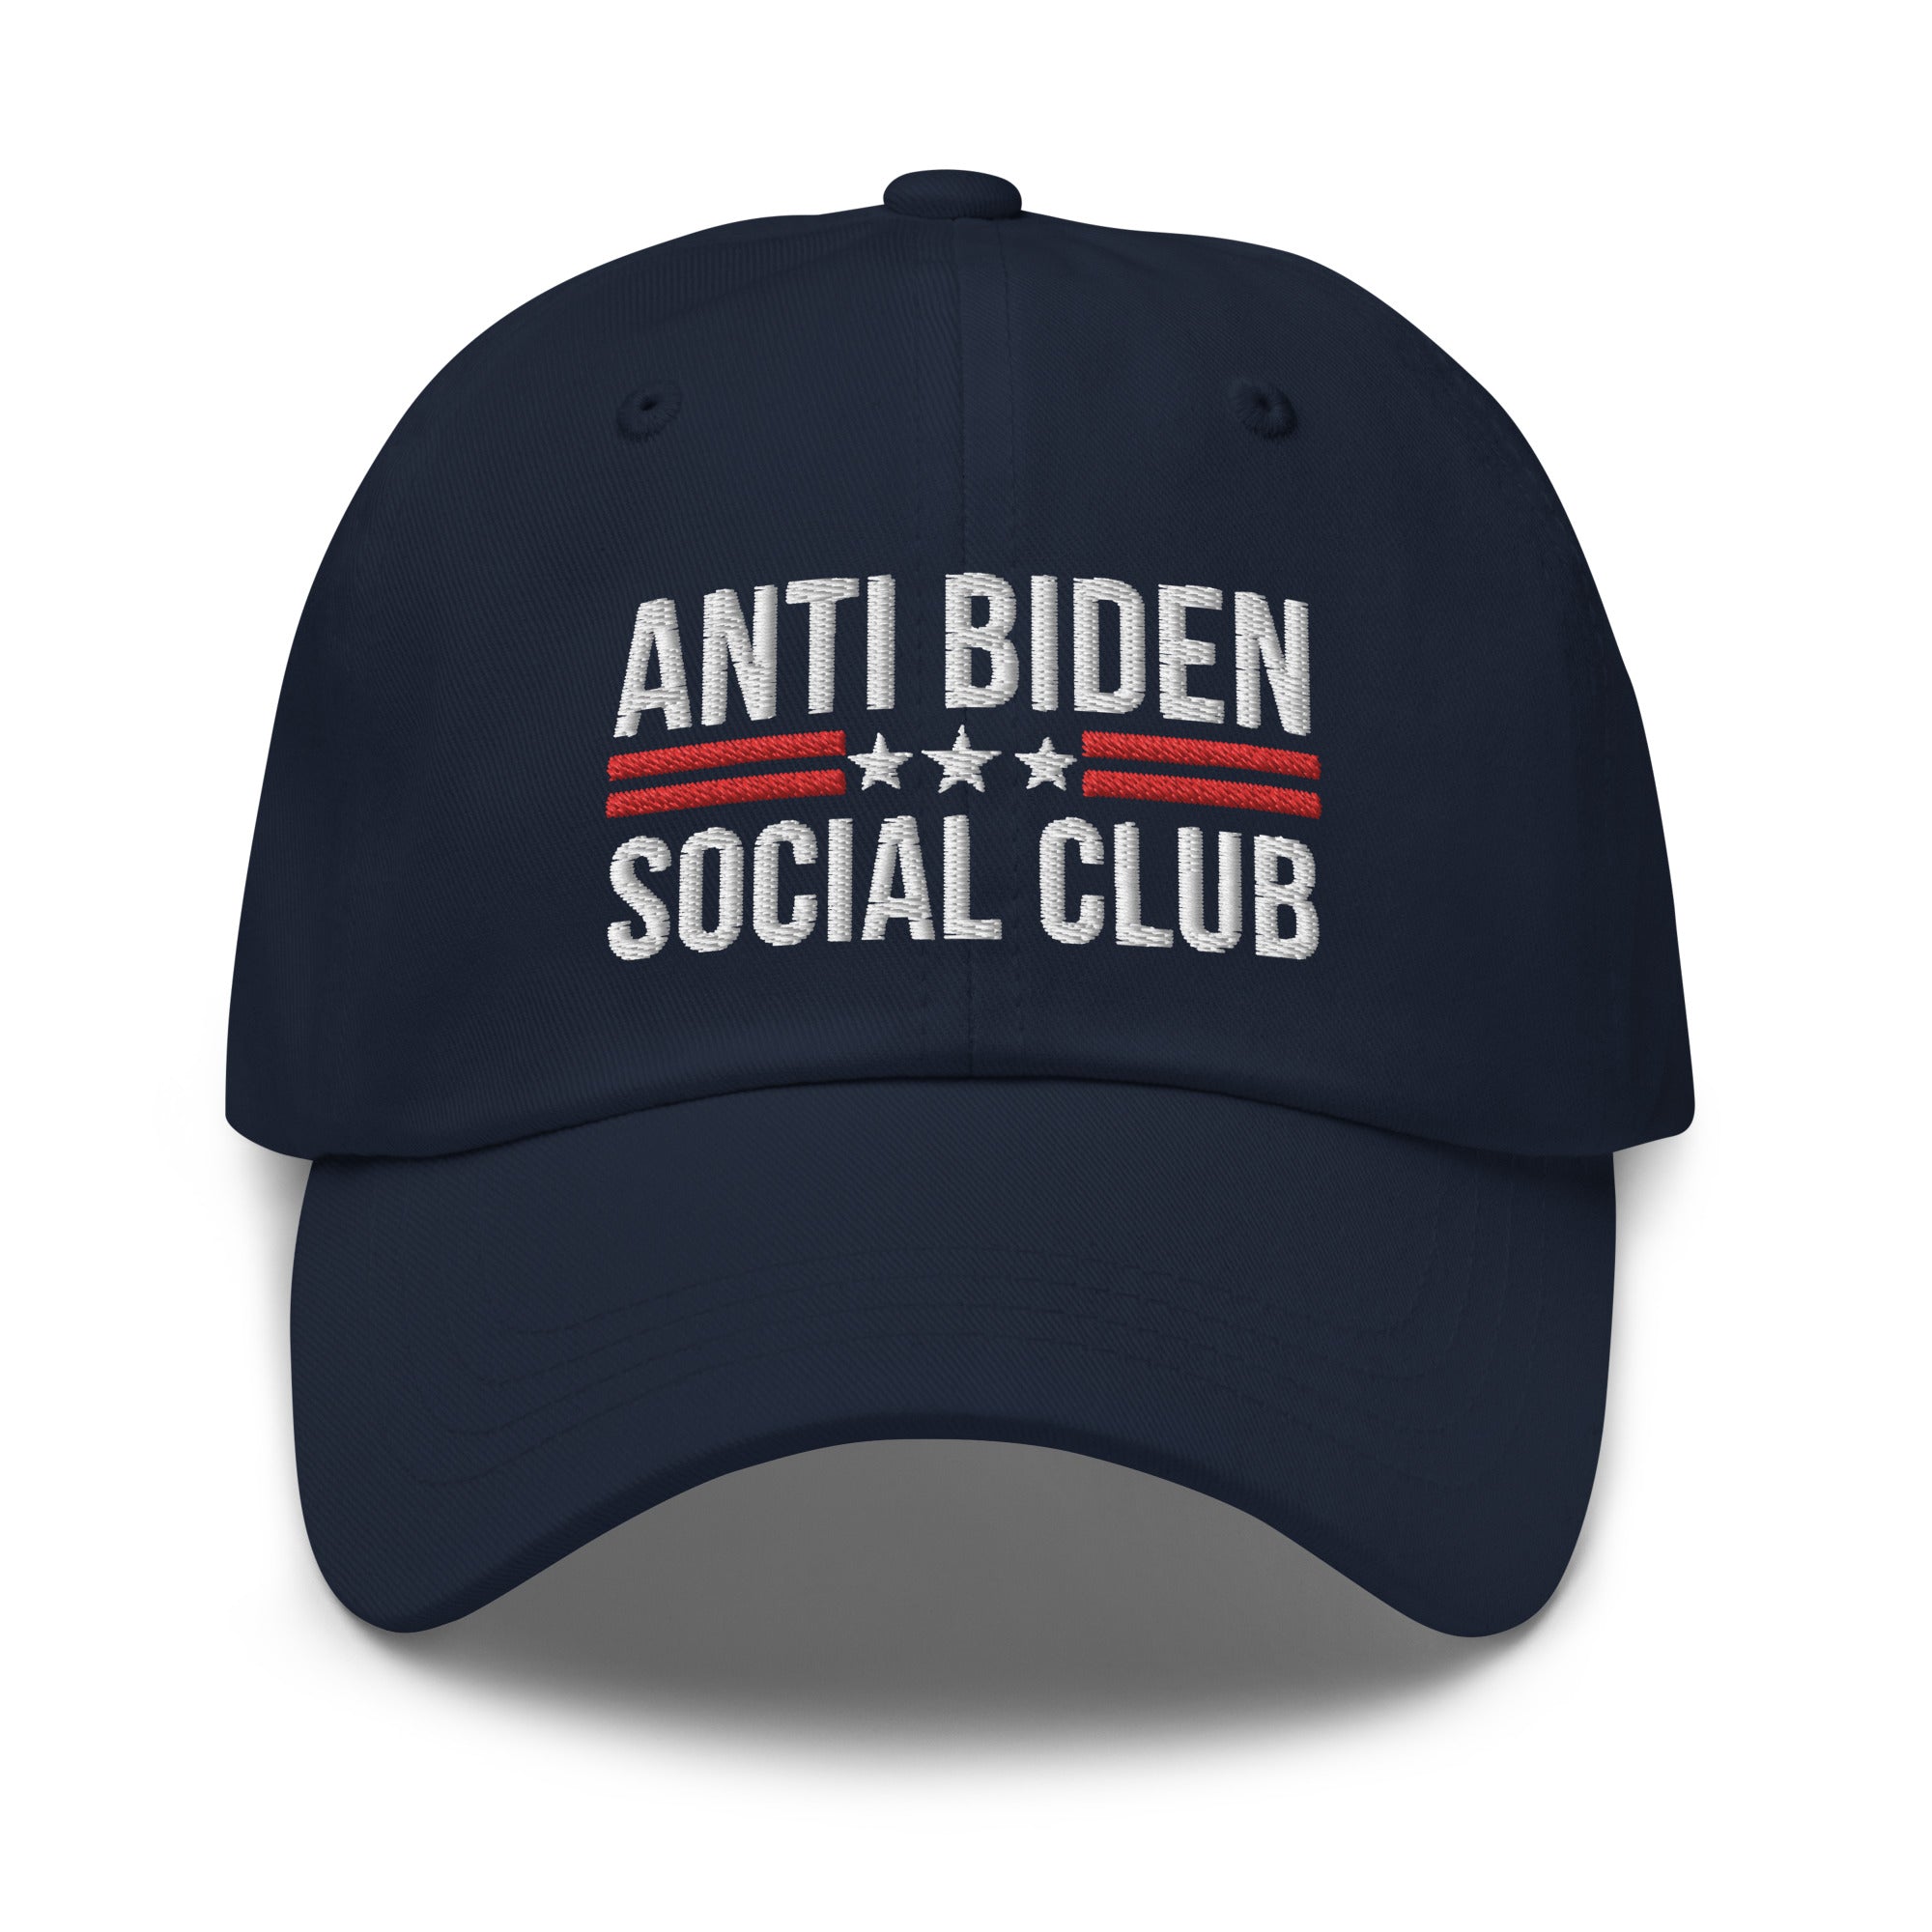 Anti Biden Social Club Dad Hat, FJB Hat, Conservative Hat, Republican Dad Cap, Impeach Biden, Biden Sucks, Anti Biden Hat - Madeinsea©